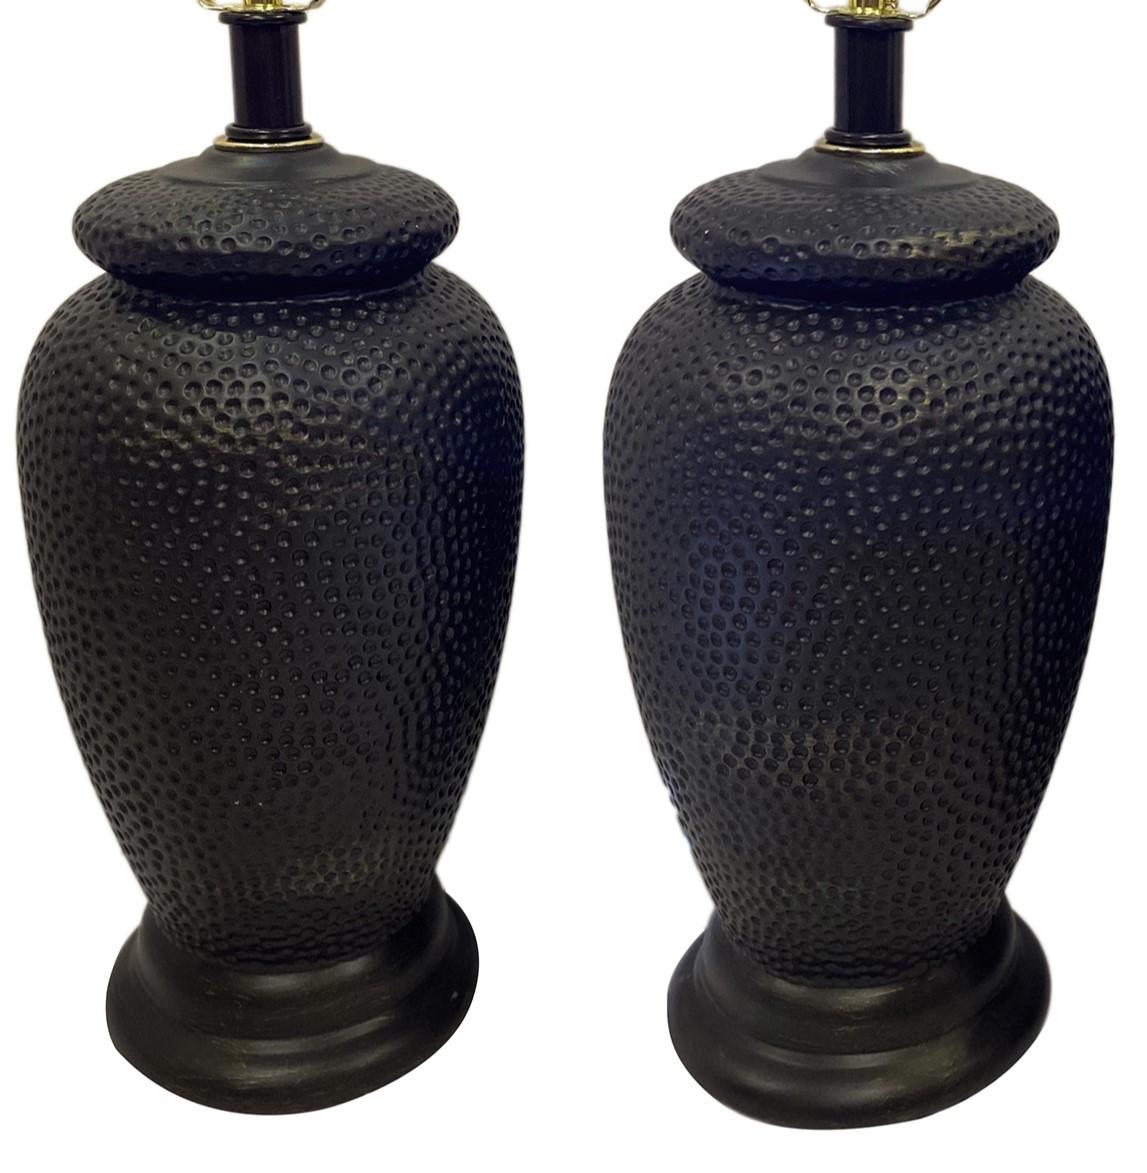 Ein Paar französische Keramiklampen mit gehämmerter Textur aus den 1960er Jahren.

Abmessungen:
Höhe des Körpers: 15″.
Höhe bis zum Rest des Schirms: 24.5″.
Durchmesser: 8″